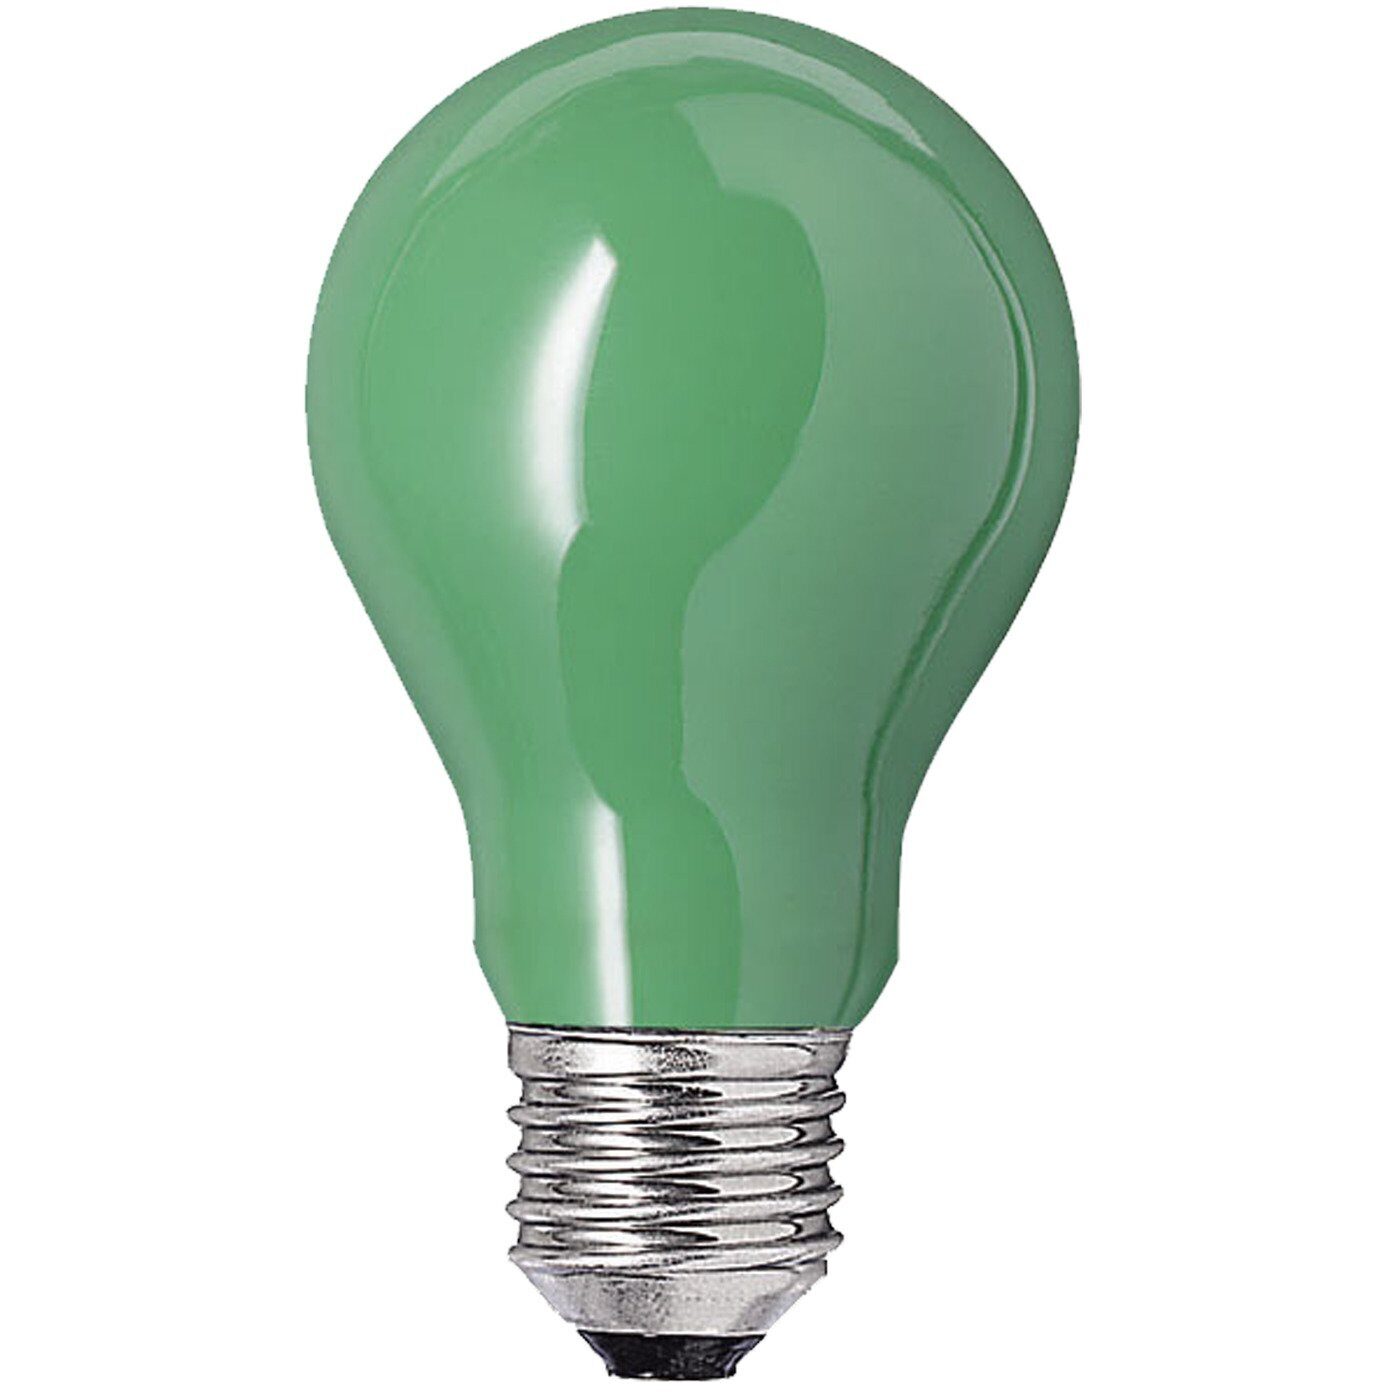 Грин зеленые лампы. Лампа накаливания е27 25вт. Лампа накаливания 40 Вт цветная e27. Лампа светодиодная е27 10вт 24в 45мм зеленая. Цветные лампочки е27 Леруа.